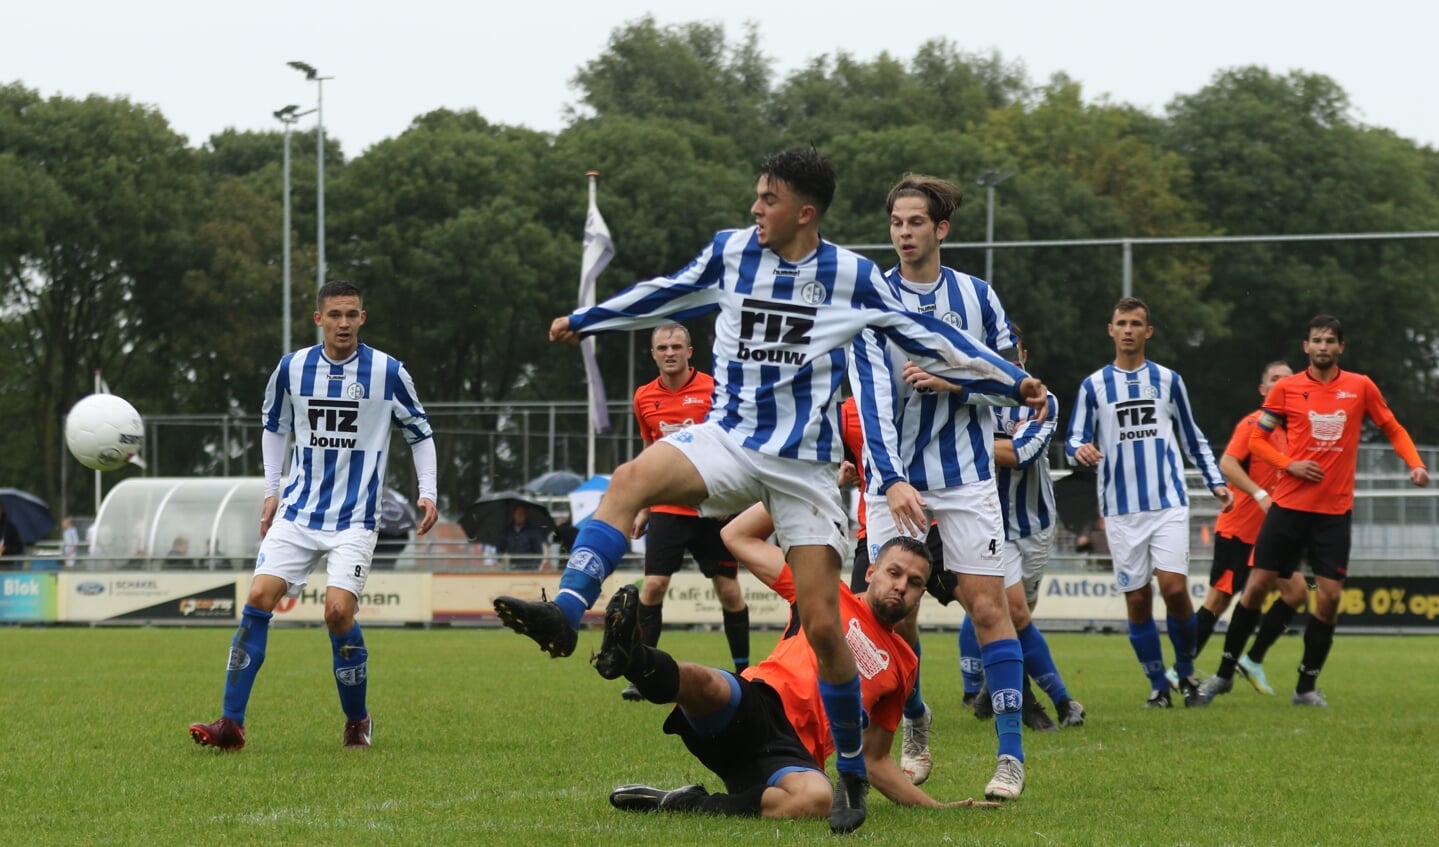 • Schoonhoven - Ameide (3-1).